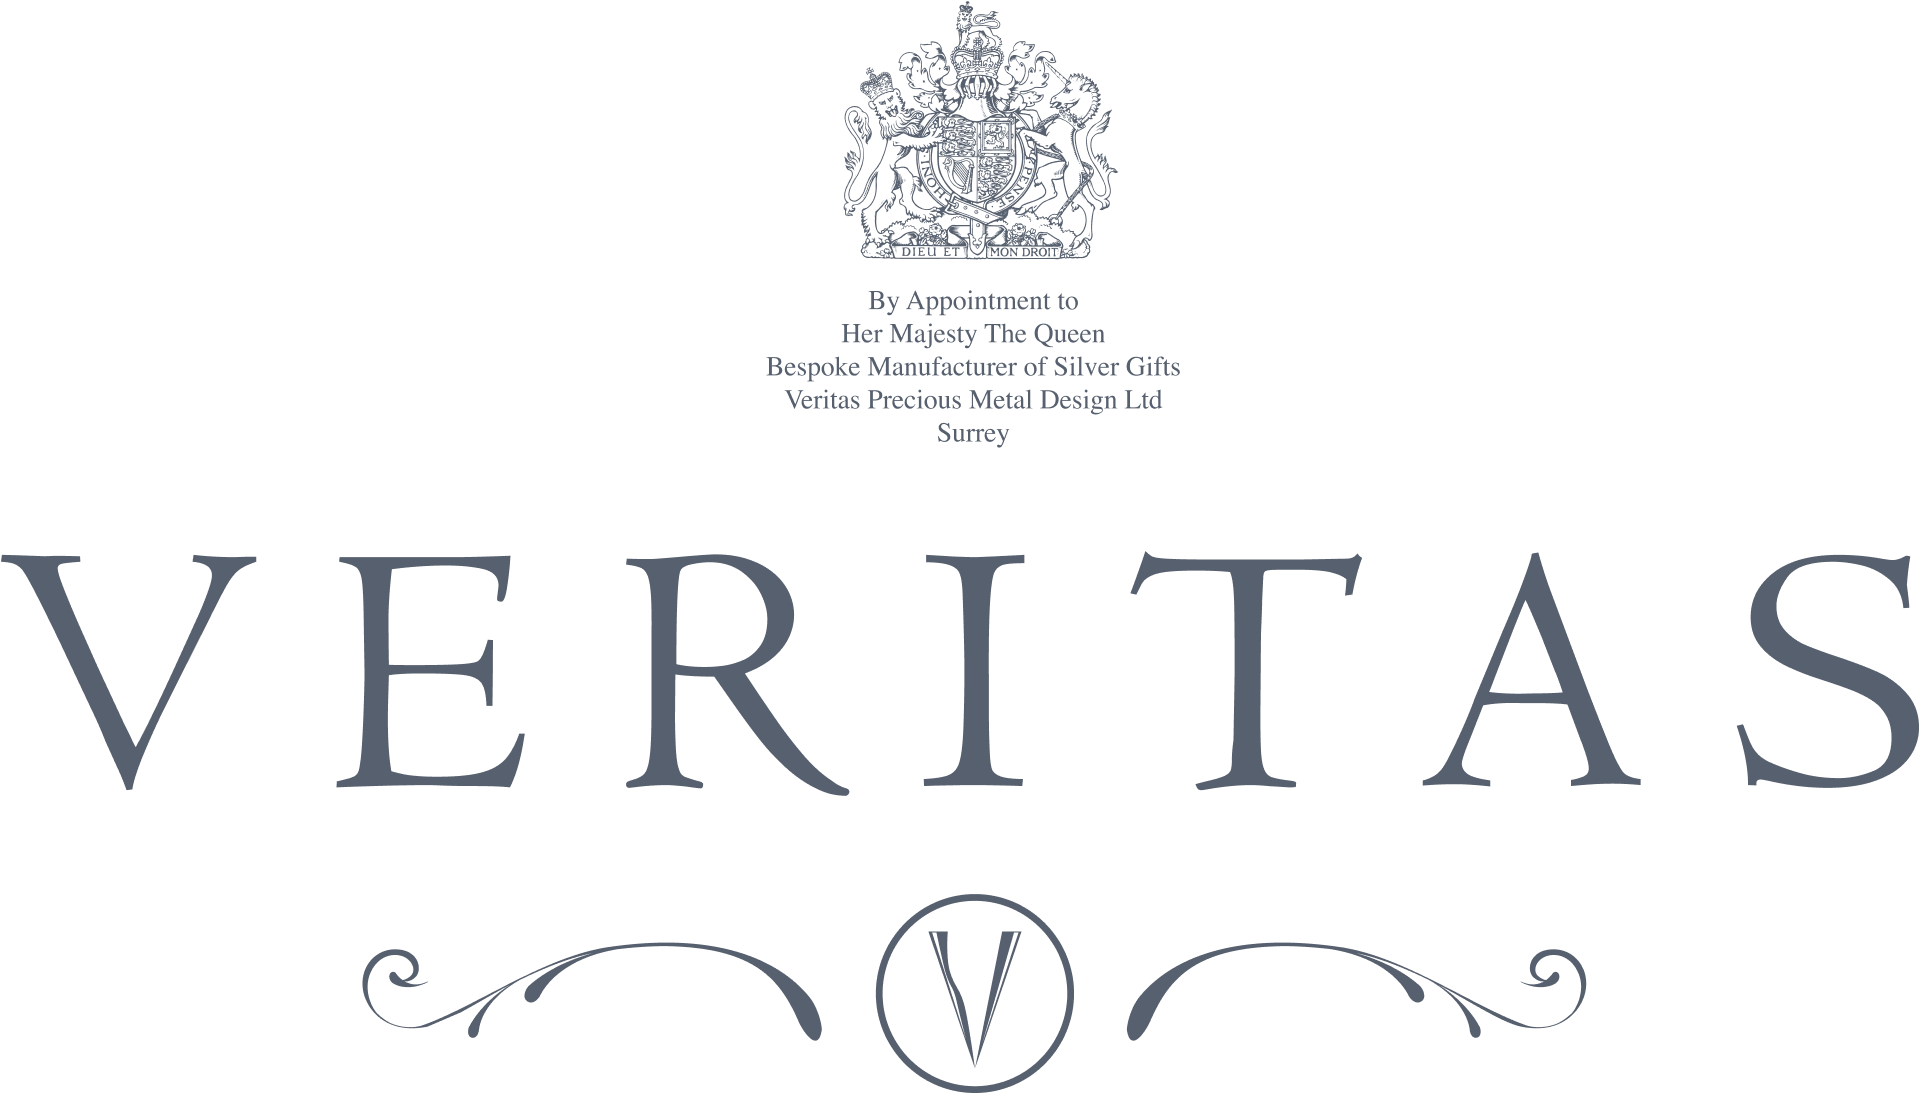 Veritas Logo with Royal Warrant